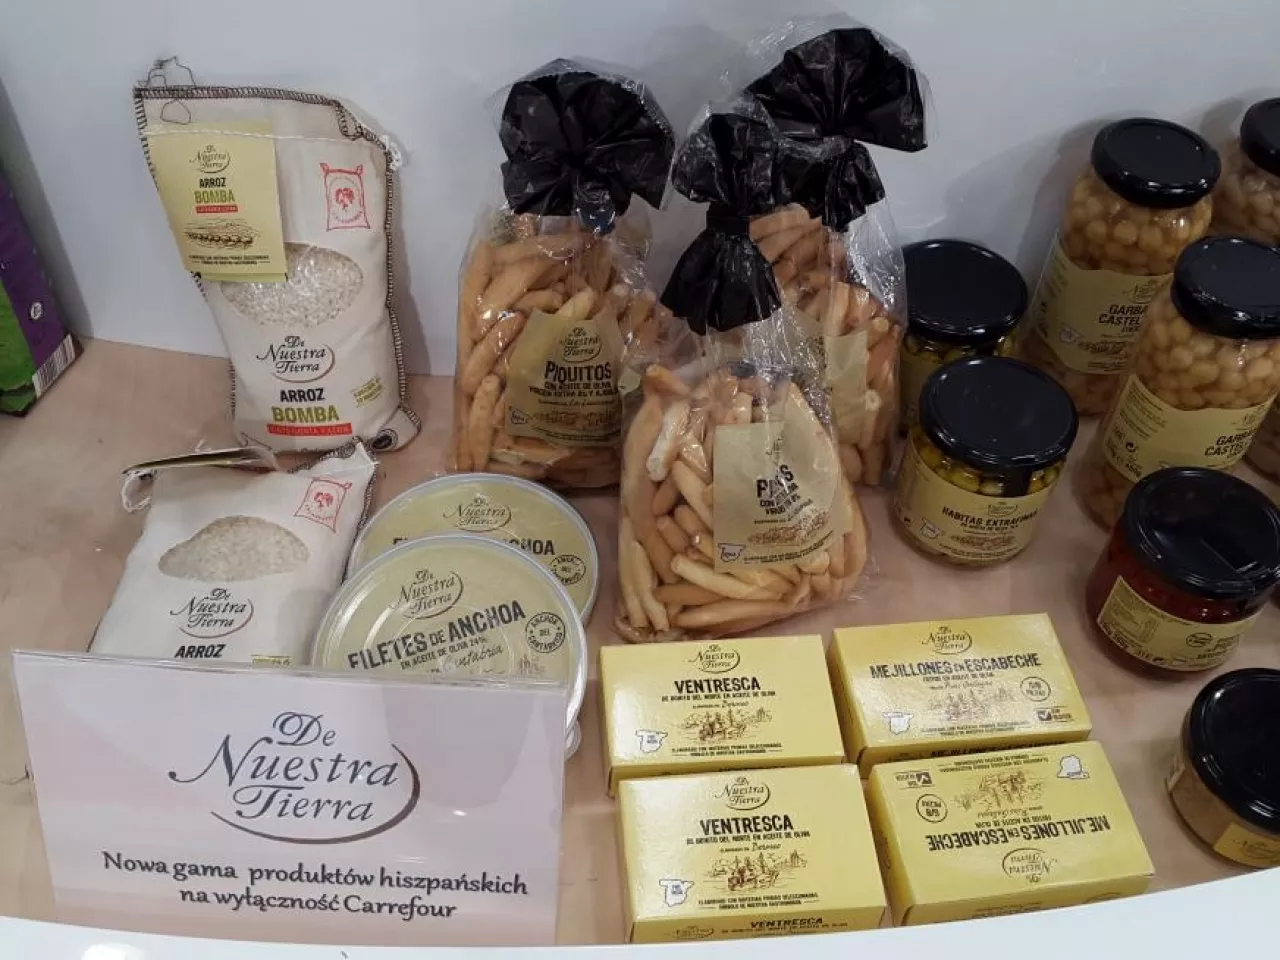 Produkty De Nuestra Tierra trafią do wyłącznej sprzedaży w sklepach Carrefour na początku października (fot. wiadomoscihandlowe.pl)